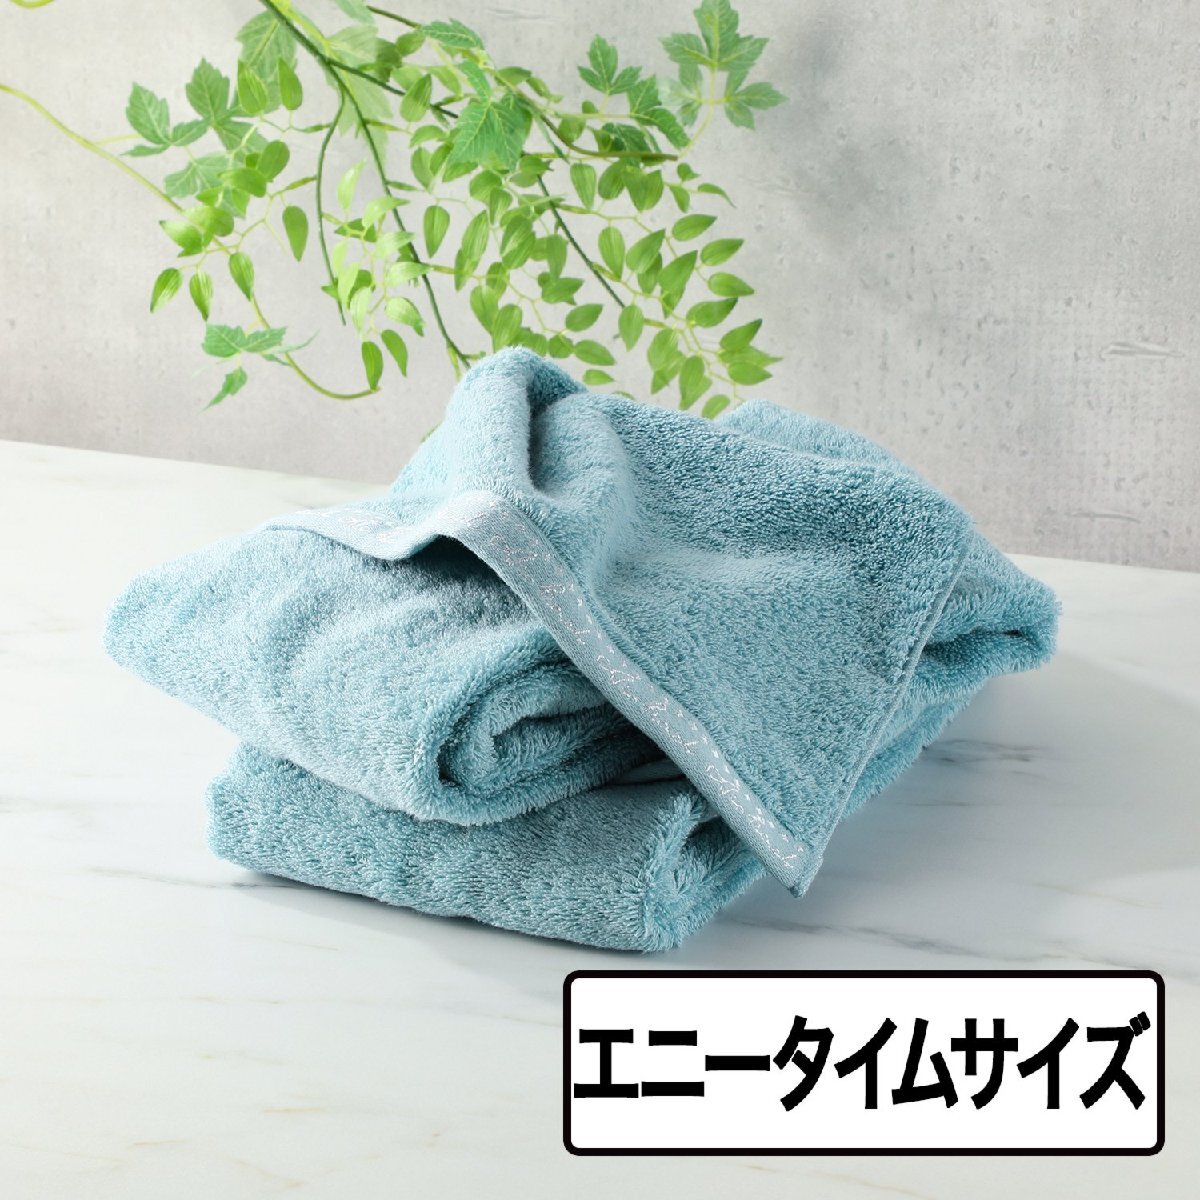 [ новый товар не использовался ] сейчас . полотенце air kaol воздушный ... органический si Star 2e колено время размер одного цвета 2 листов комплект сделано в Японии голубой [ справочная цена Y5,280-